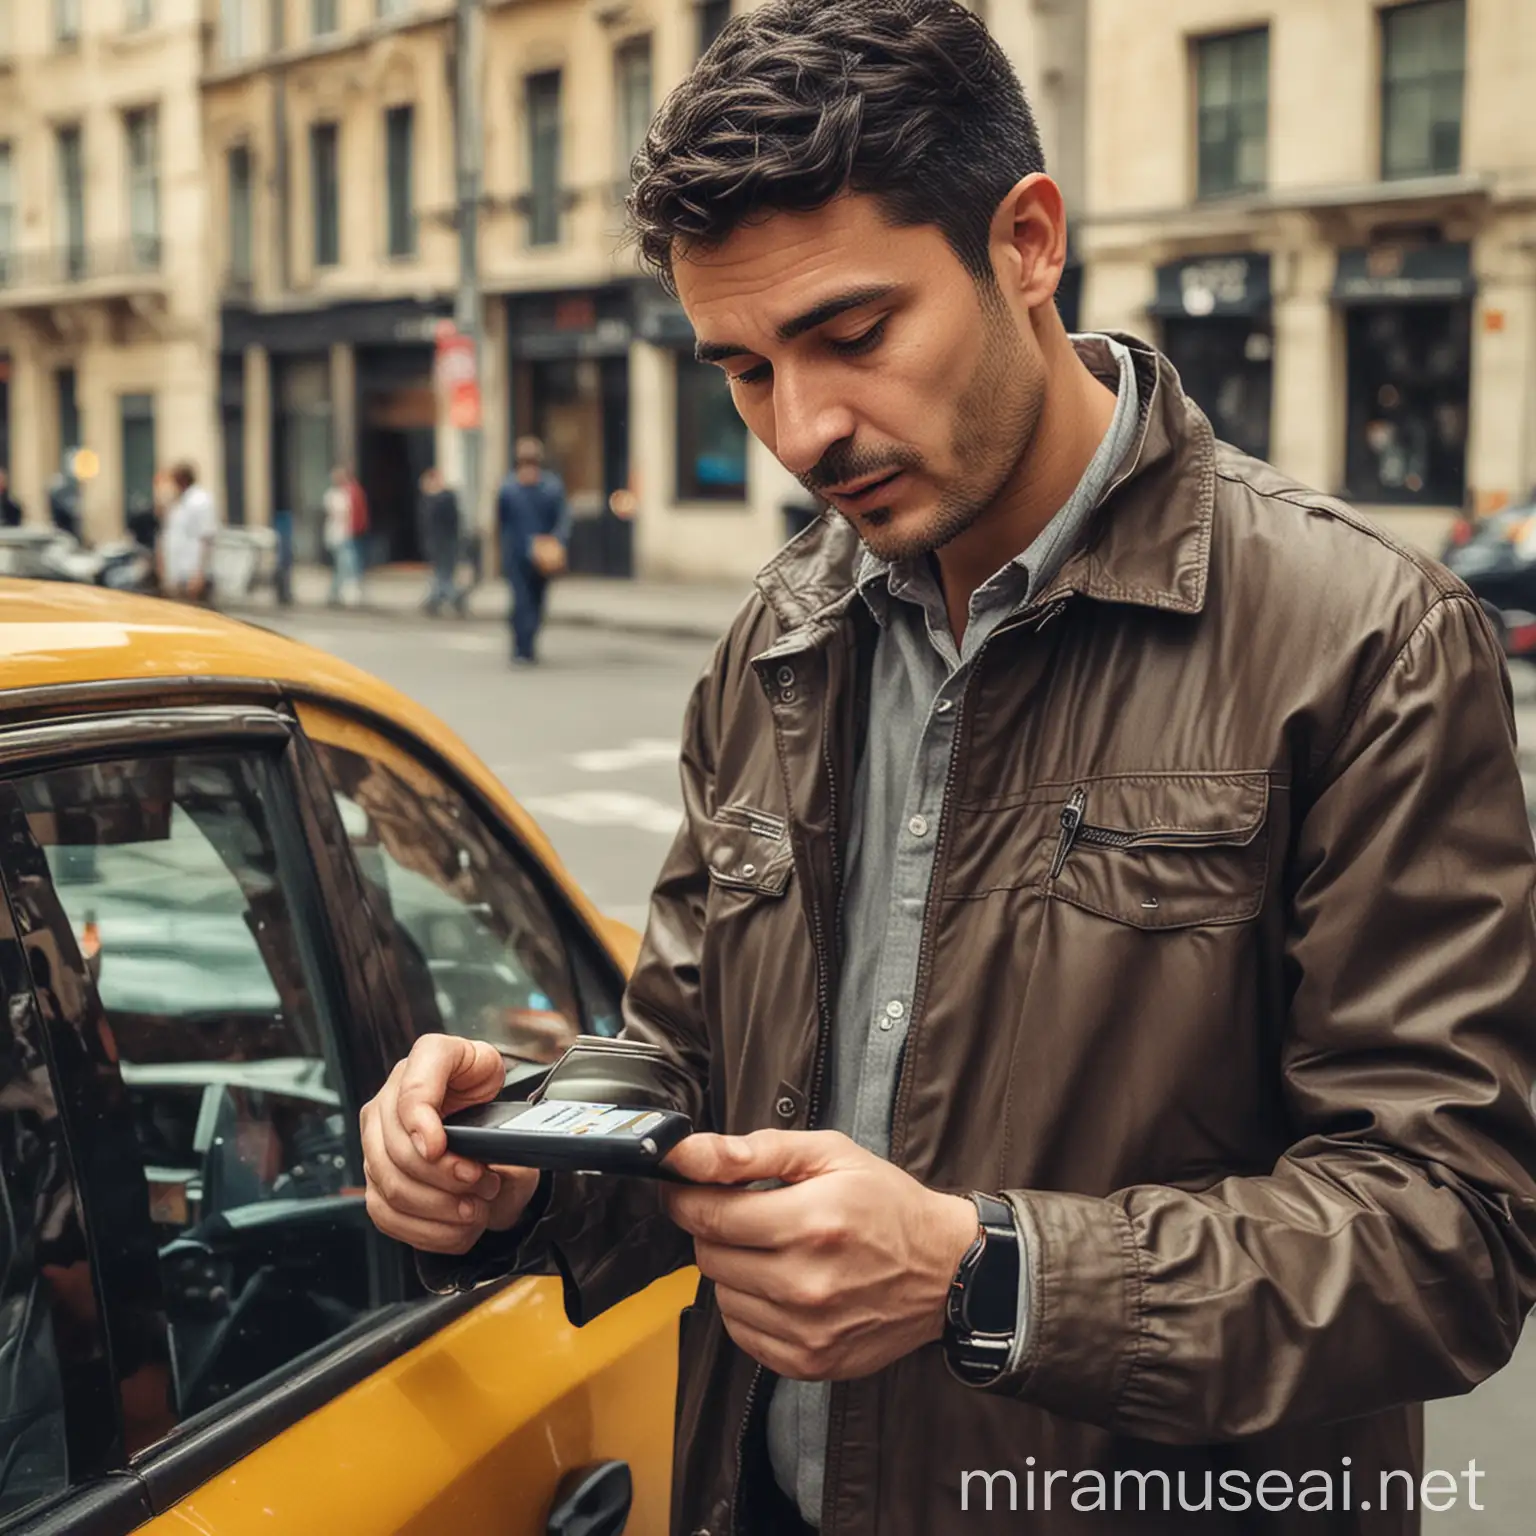 un chauffeur de taxi entrain de scanner un documents vaec son smartphone